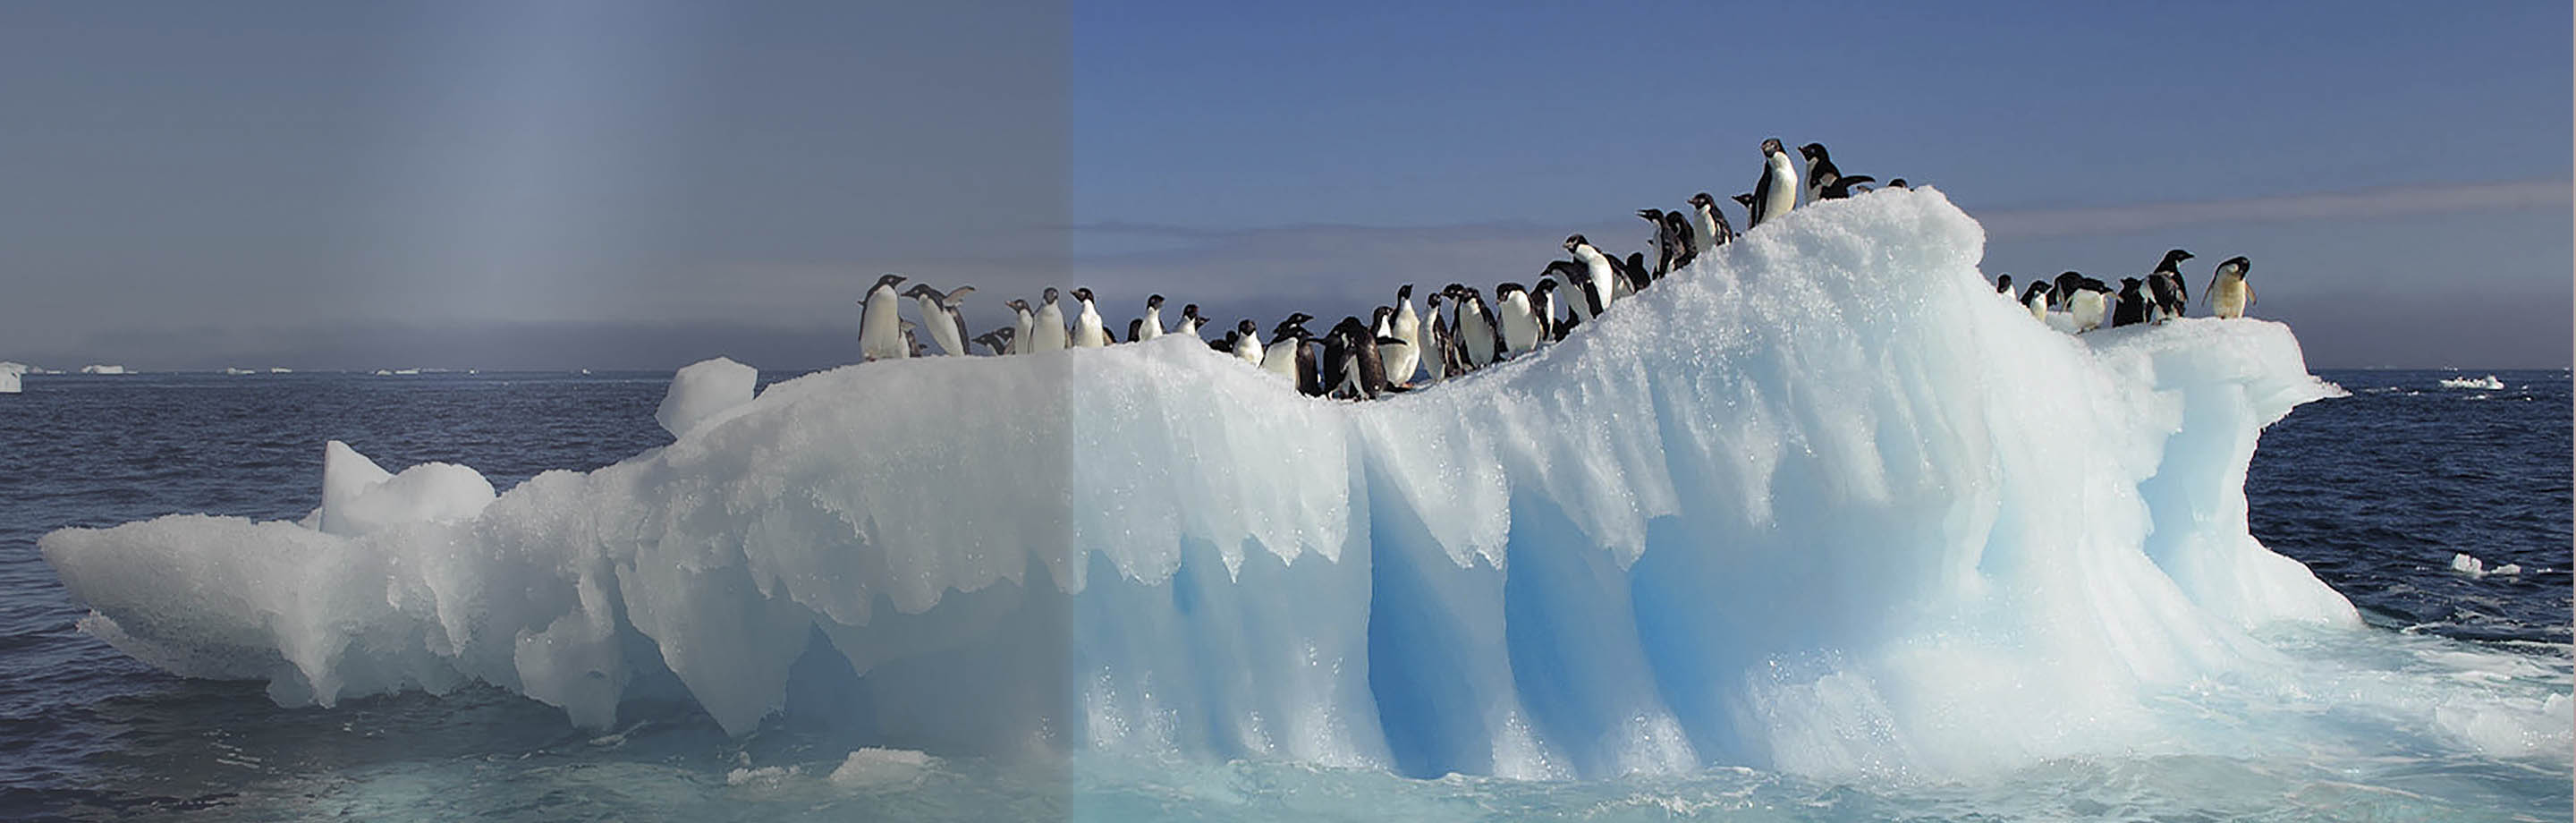 pingüinos sobre el hielo